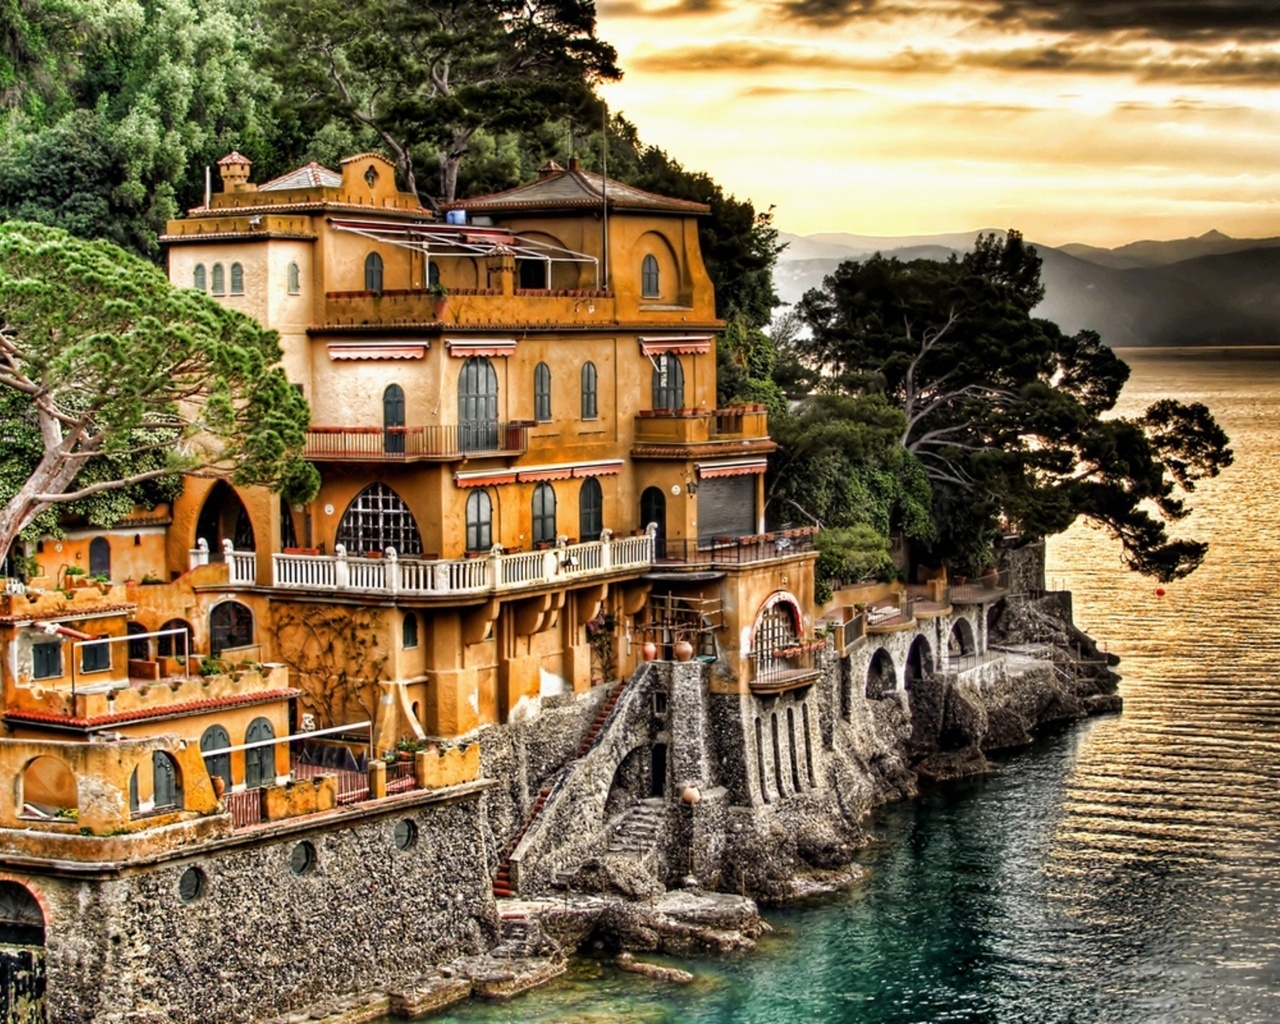 Portofino Coast Genoa for 1280 x 1024 resolution